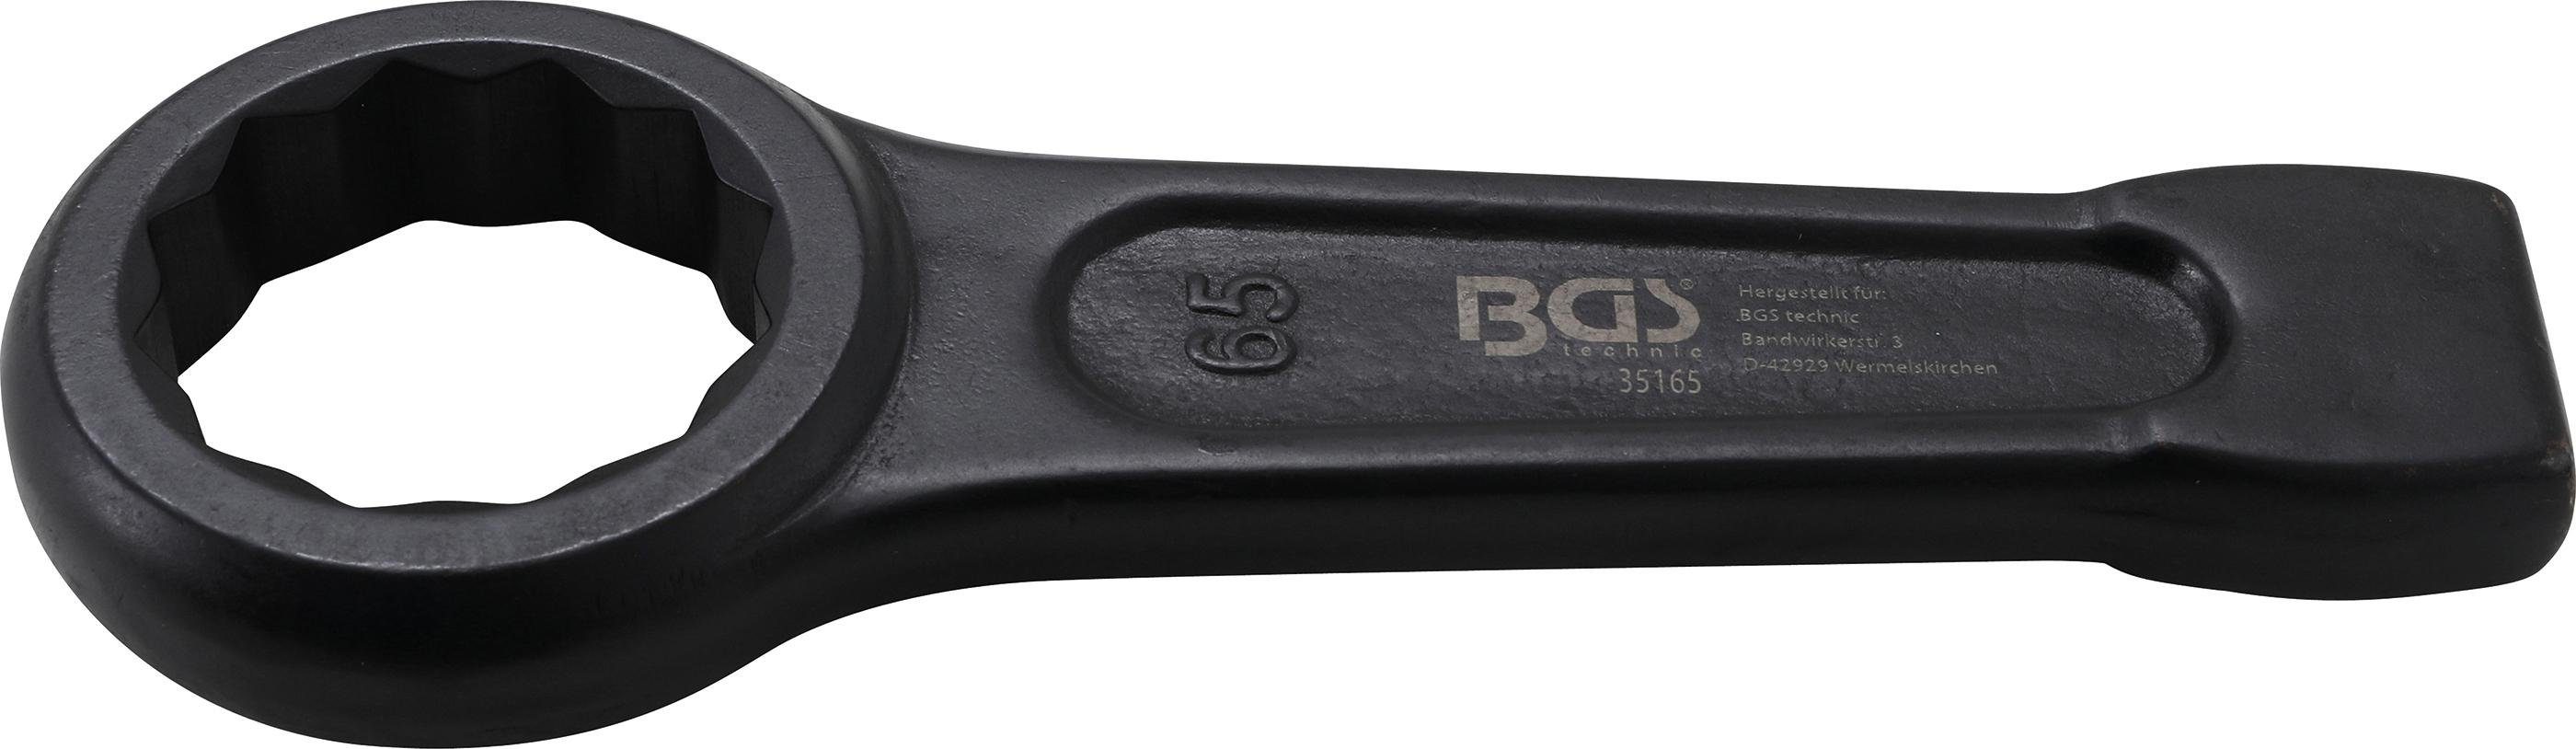 BGS SW Ringschlüssel 65 technic mm Schlag-Ringschlüssel,